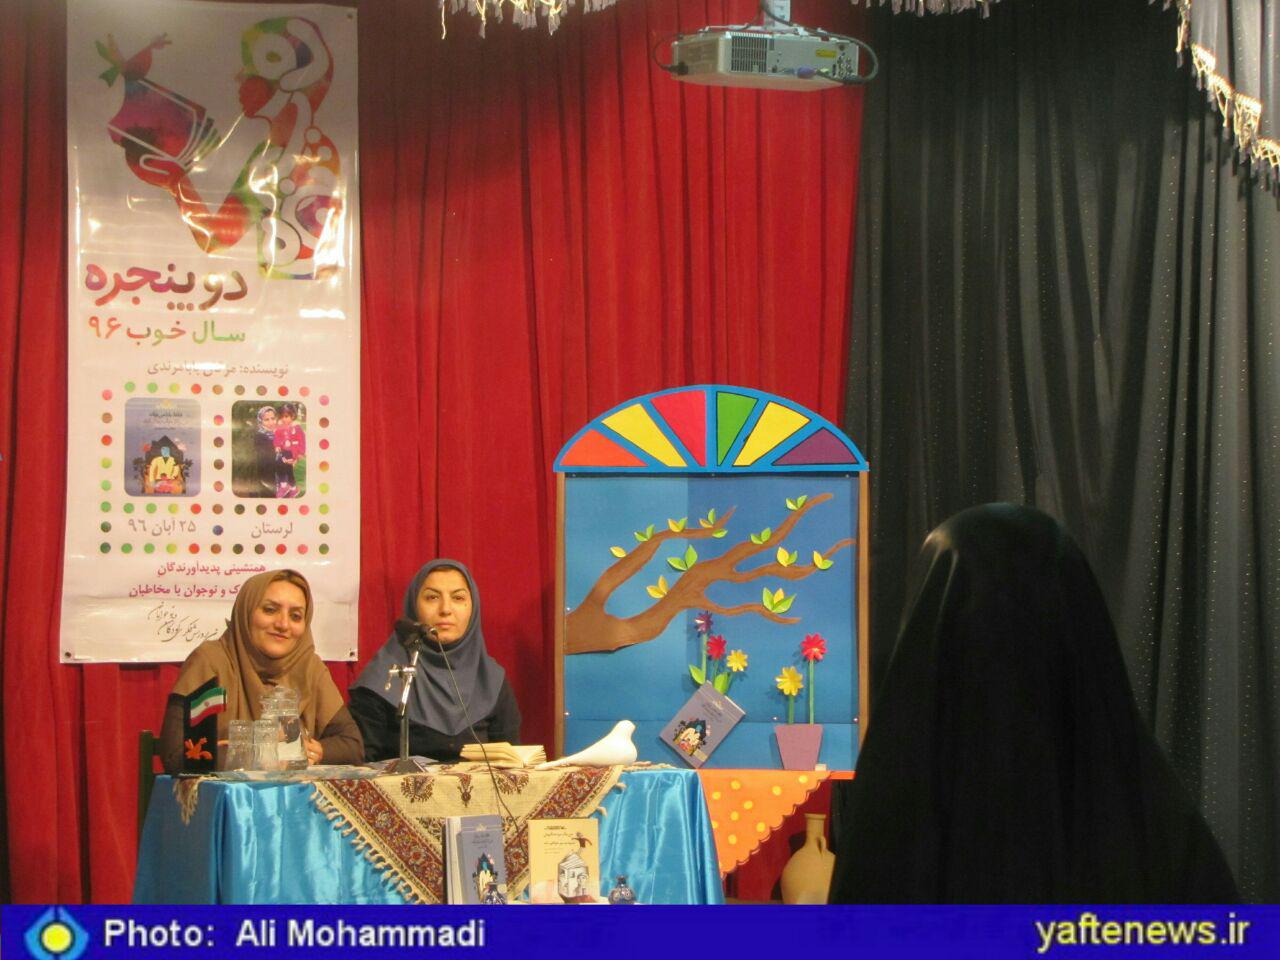 نشست ادبی دو پنجره در خرم آباد